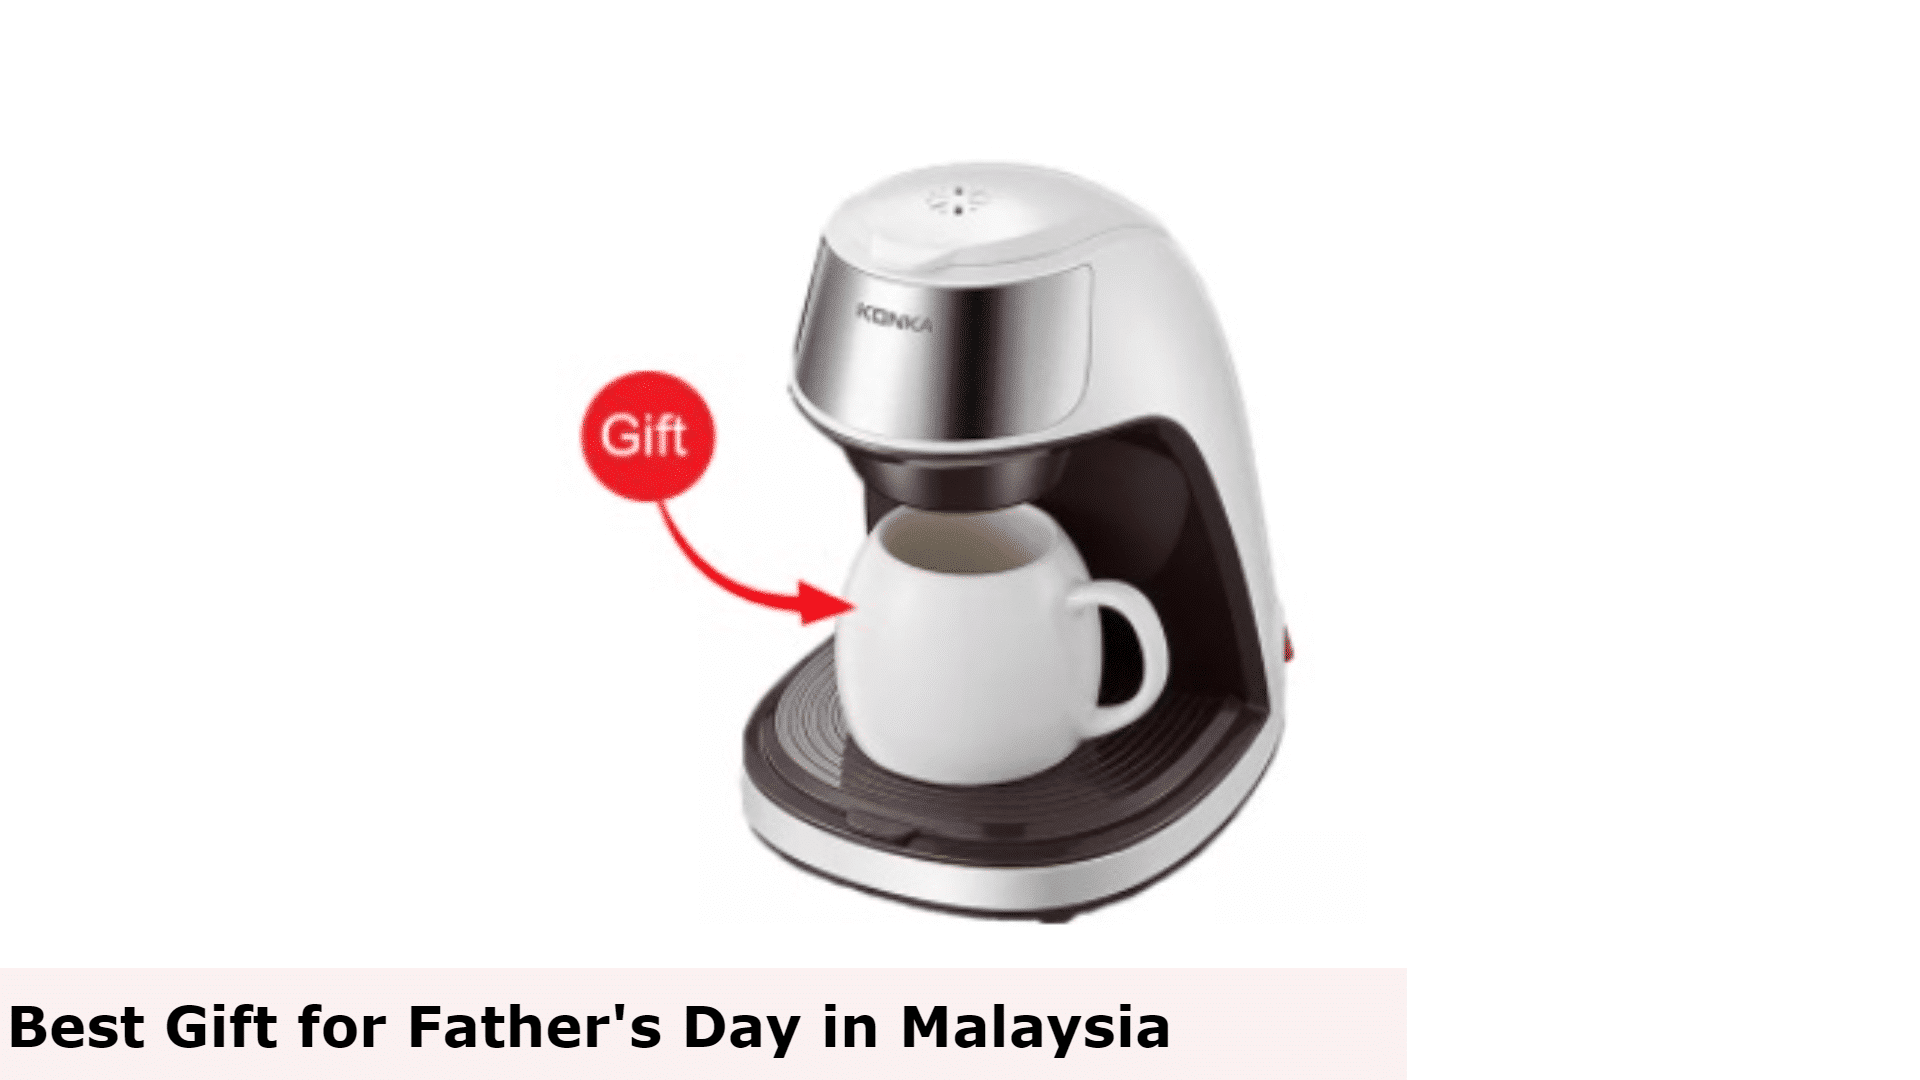 Mesin Kopi - Hadiah Terbaik untuk Hari Bapa di Malaysia, Hadiah Terbaik untuk Hari Bapa Malaysia, Hadiah Hari Bapa Terbaik untuk Ayah, Apa yang ayah mahukan untuk Hari Bapa di Malaysia?, Apakah hadiah murah yang bagus untuk Hari Bapa di Malaysia?, Adakah anda memberi hadiah pada Hari Bapa di Malaysia?, hadiah untuk ayah yang tidak mahu apa-apa, idea hadiah hari bapa yang ringkas, idea hadiah hari bapa 2022, hadiah hari bapa' idea semasa covid, idea hadiah hari bapa daripada anak perempuan, hadiah unik untuk ayah, idea hadiah hari bapa daripada isteri, hadiah hari bapa daripada anak lelaki, Apa yang dibeli untuk ayah yang tidak mahu apa-apa?, Apa yang perlu ayah yang sukar dibeli?, Apa yang perlu saya dapatkan ayah saya yang membosankan untuk Krismas?, Hadiah apa yang ayah suka?,